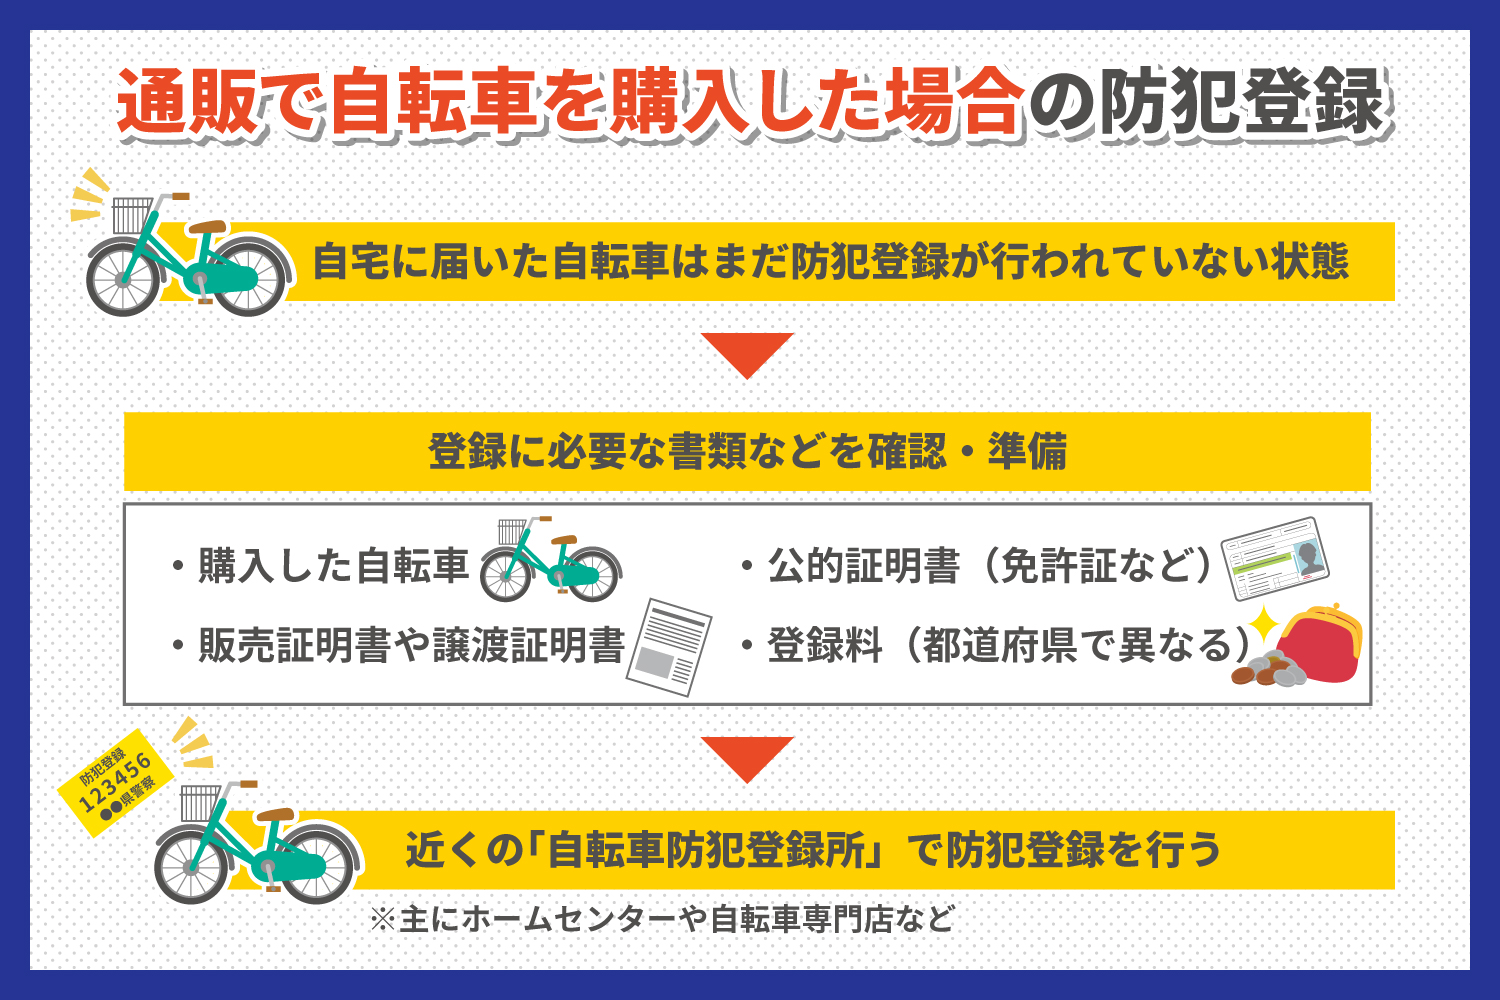 一勝堂で自転車を購入頂いた方のみの販売ページです。 自転車防犯登録ステッカー ※兵庫県のステッカーになります。（日本全国でご利用可能）自転車の一勝堂は「自転車防犯登録所」です